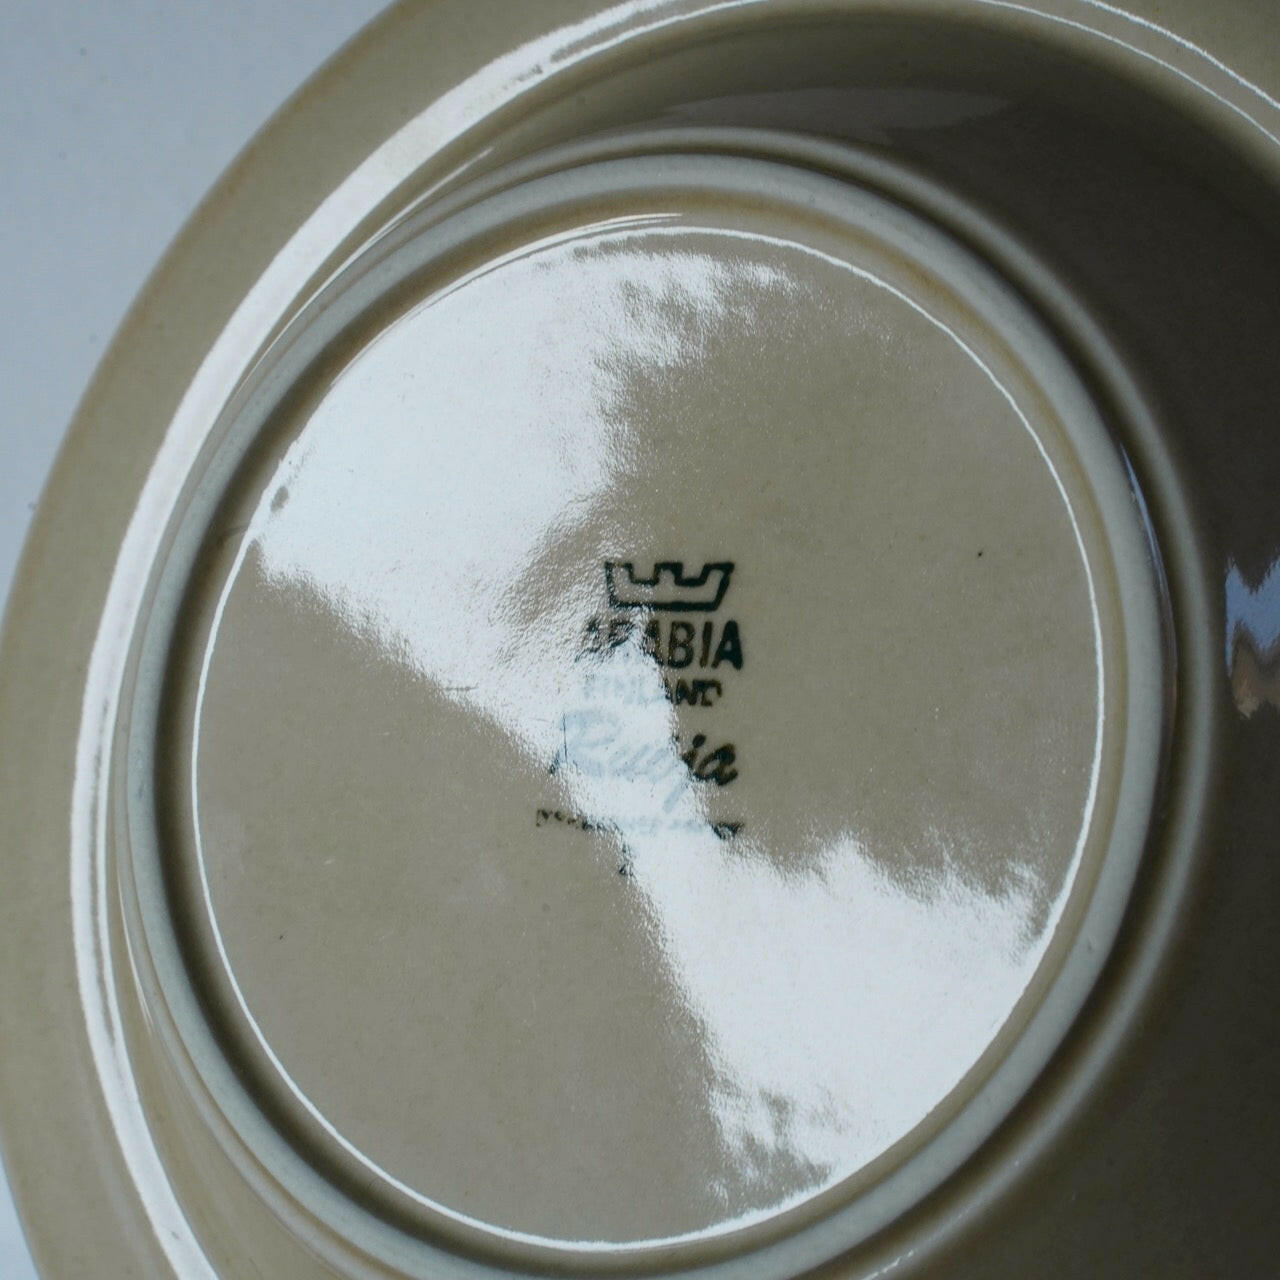 アラビア（ARABIA）ルイヤ（Ruija）20cmスープ皿 深皿 皿 ARABIA   